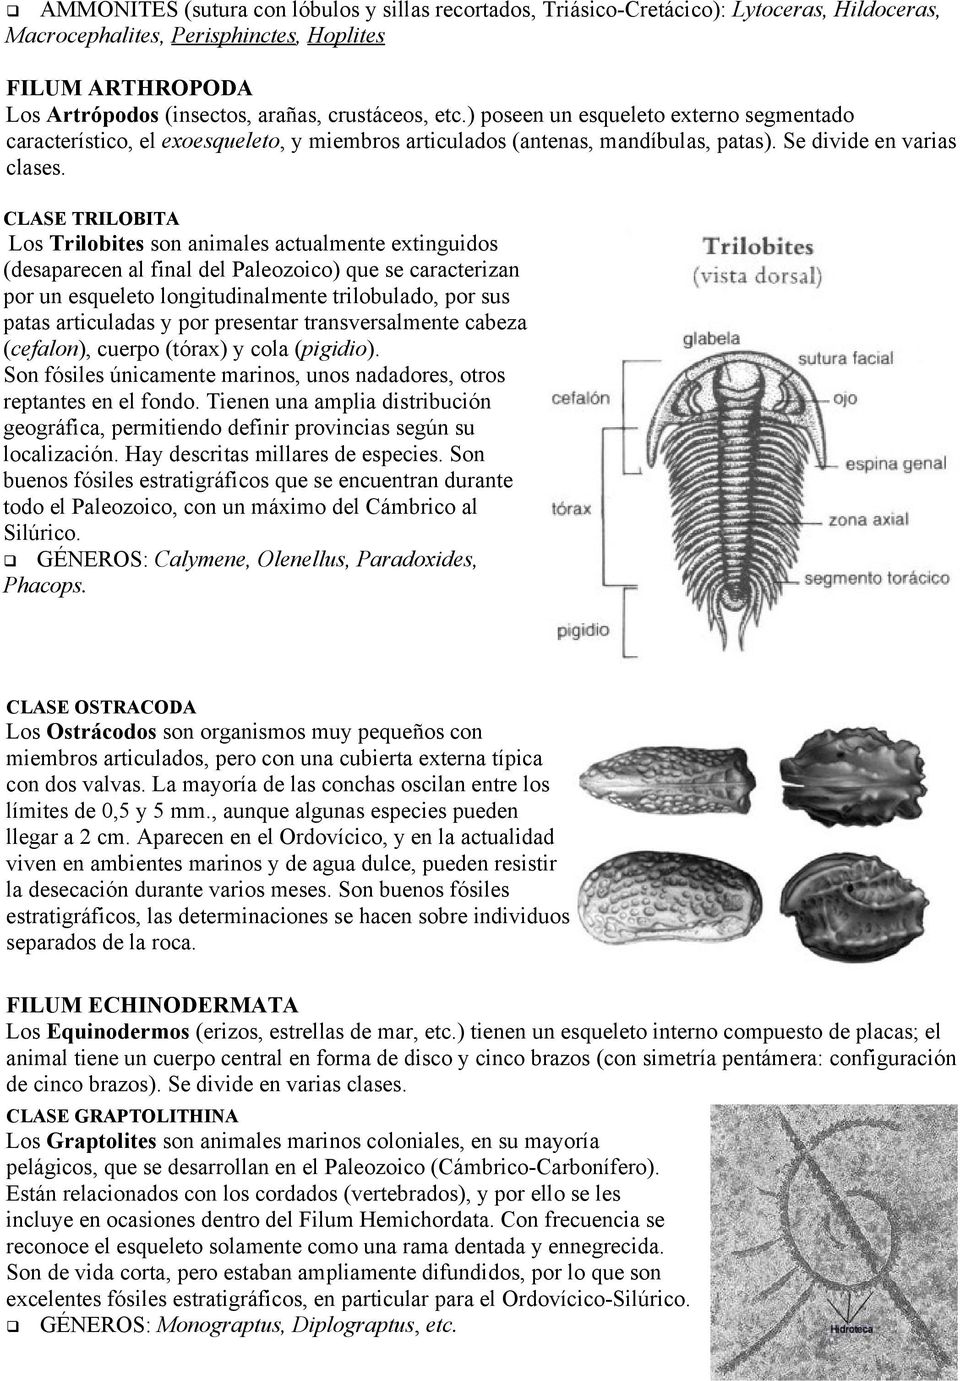 CLASE TRILOBITA Los Trilobites son animales actualmente extinguidos (desaparecen al final del Paleozoico) que se caracterizan por un esqueleto longitudinalmente trilobulado, por sus patas articuladas